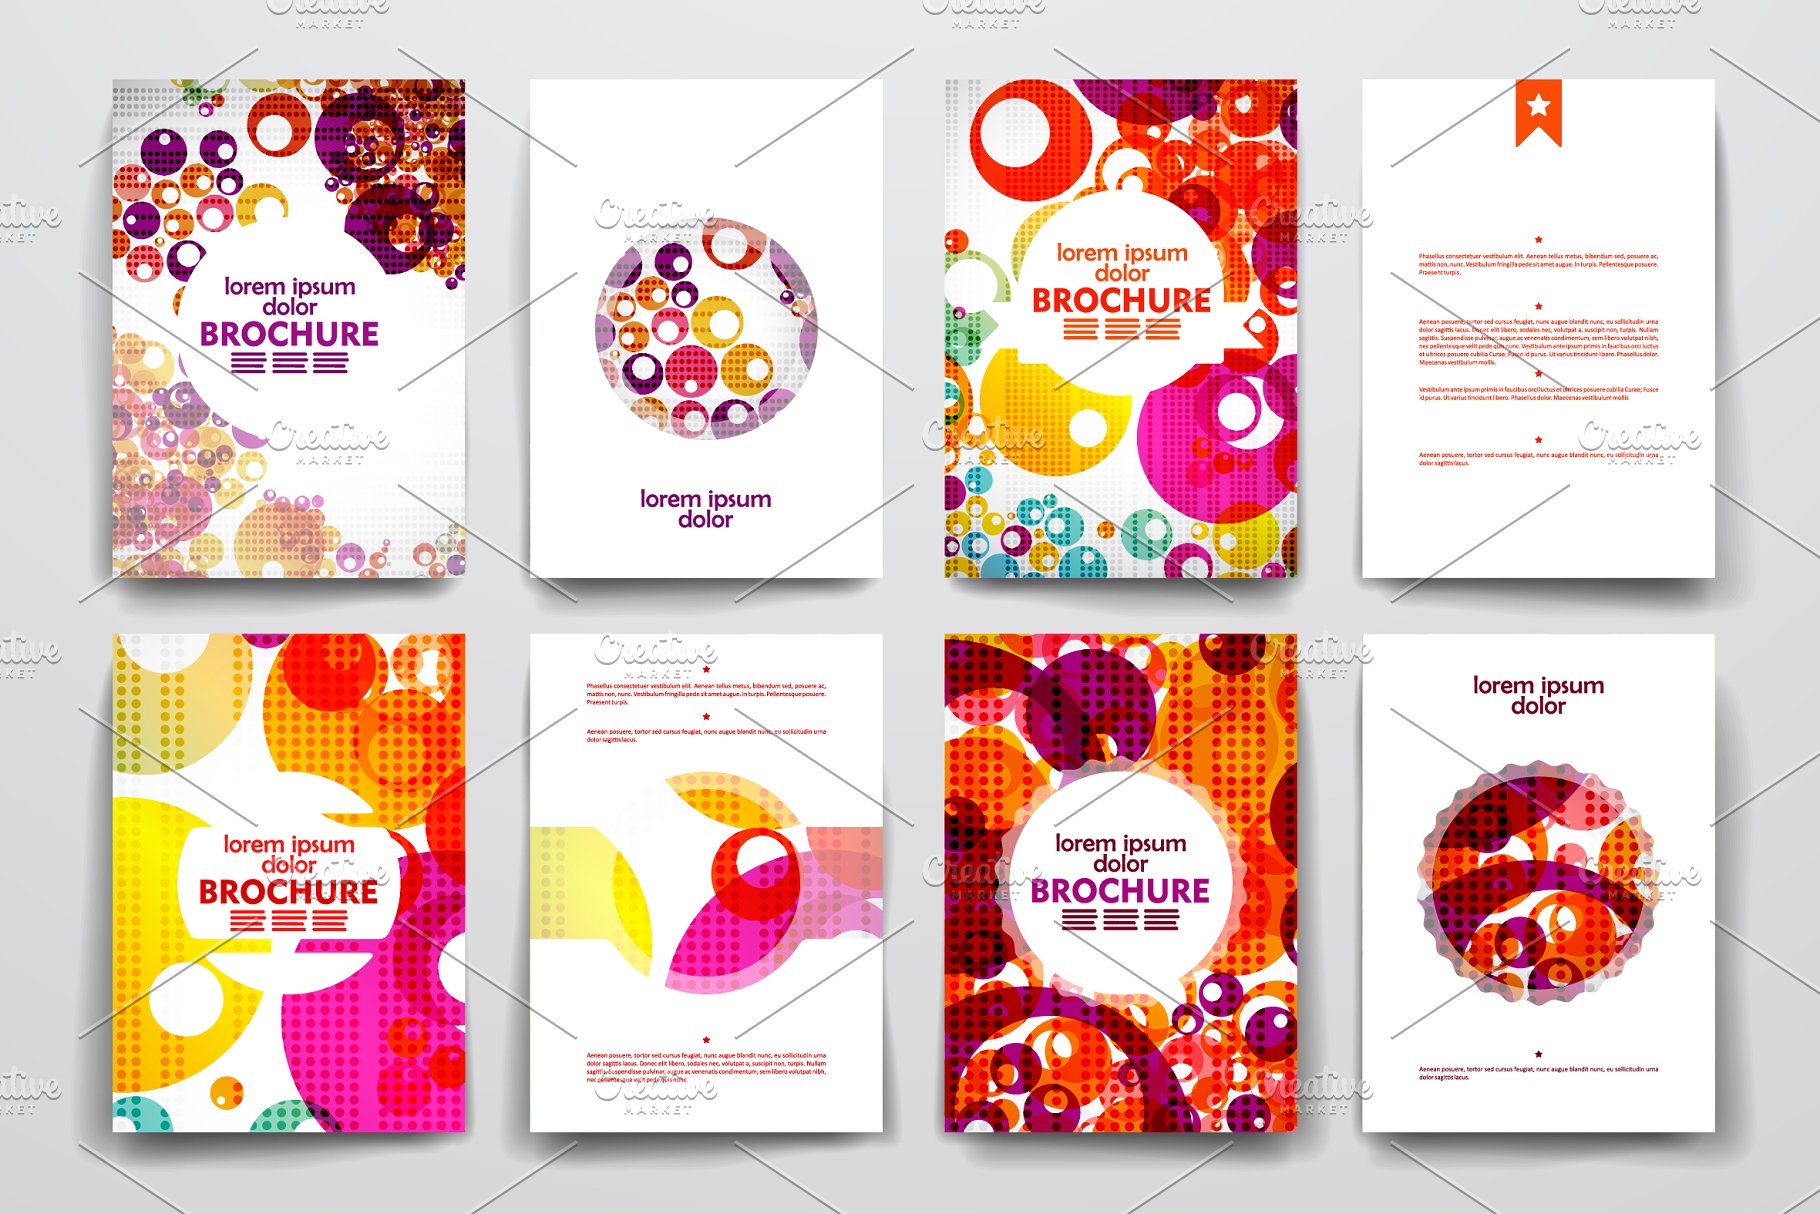 一套彩色抽象风格小册子模板  Colourful brochure templates插图(1)